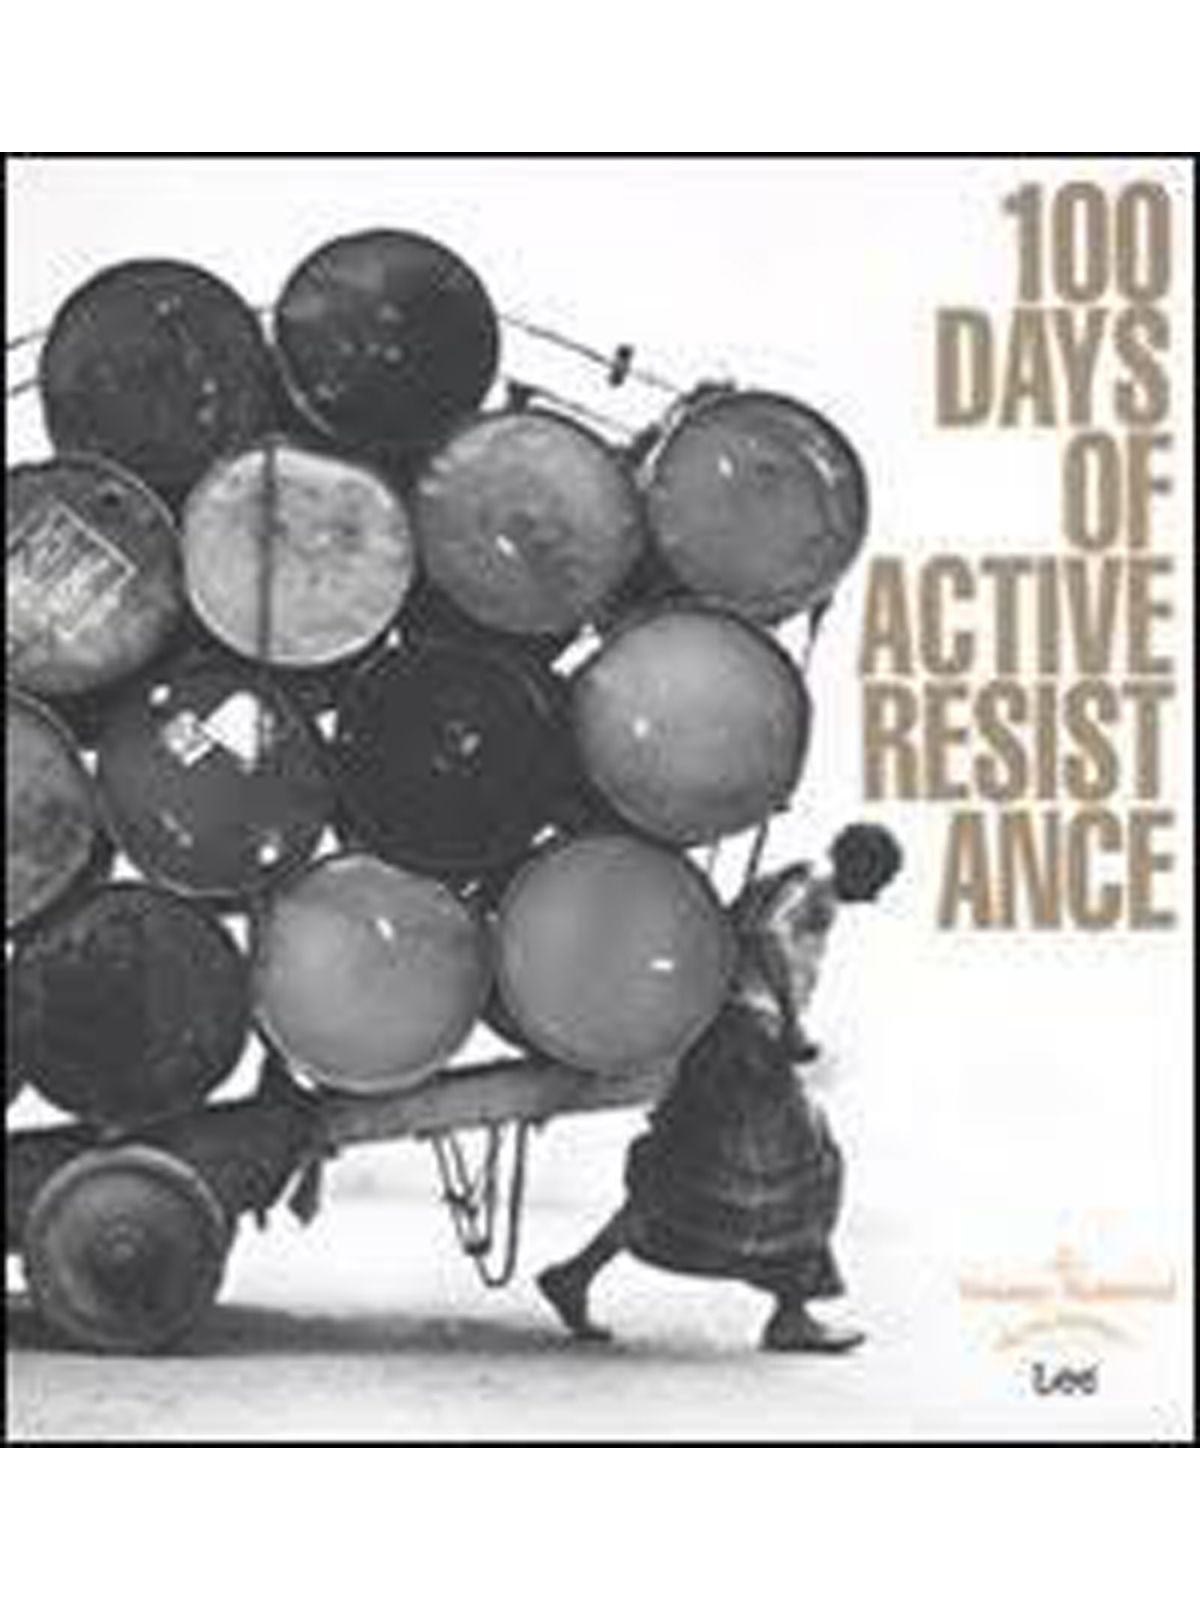 100 DAYS OF ACTIVE RESISTANCE  Купить Книгу на Английском